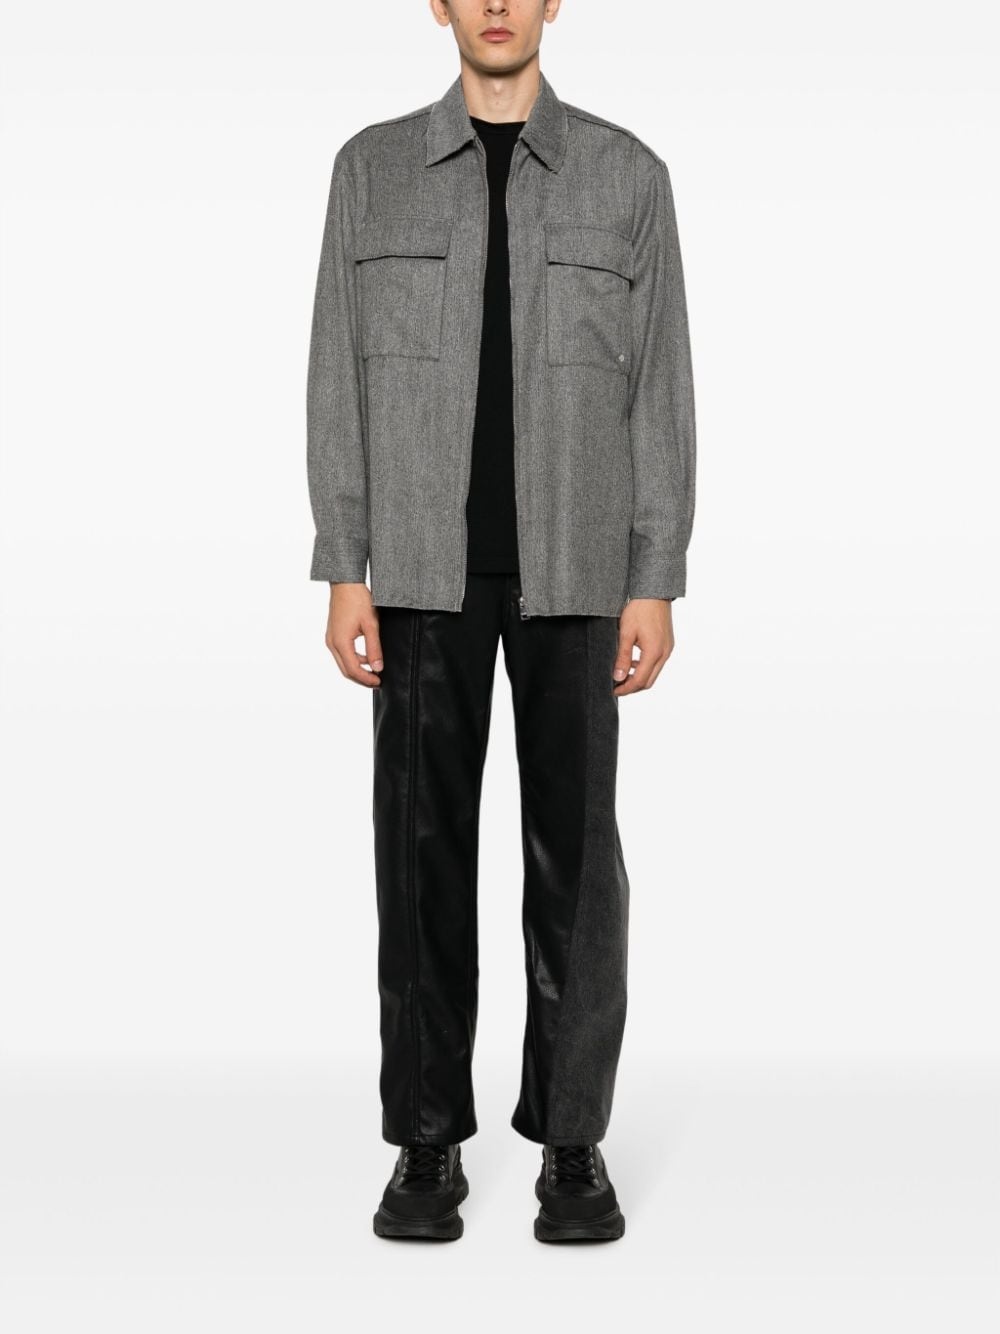 Communaute flannel shirt jacket - 2